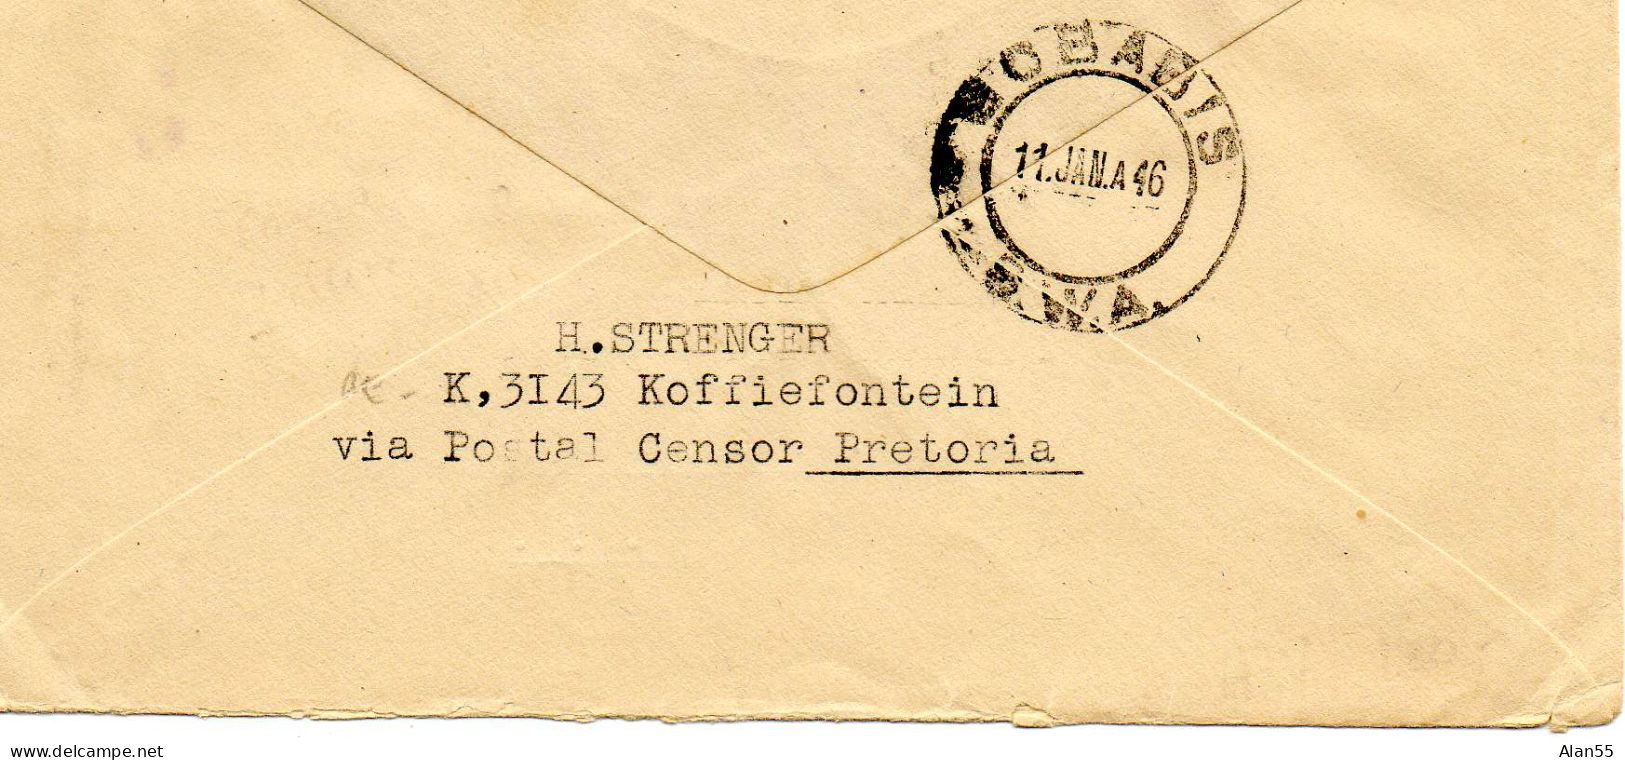 AFRIQUE DU SUD.1946. "INTERNEMENT CAMP". CENSURE - Lettres & Documents